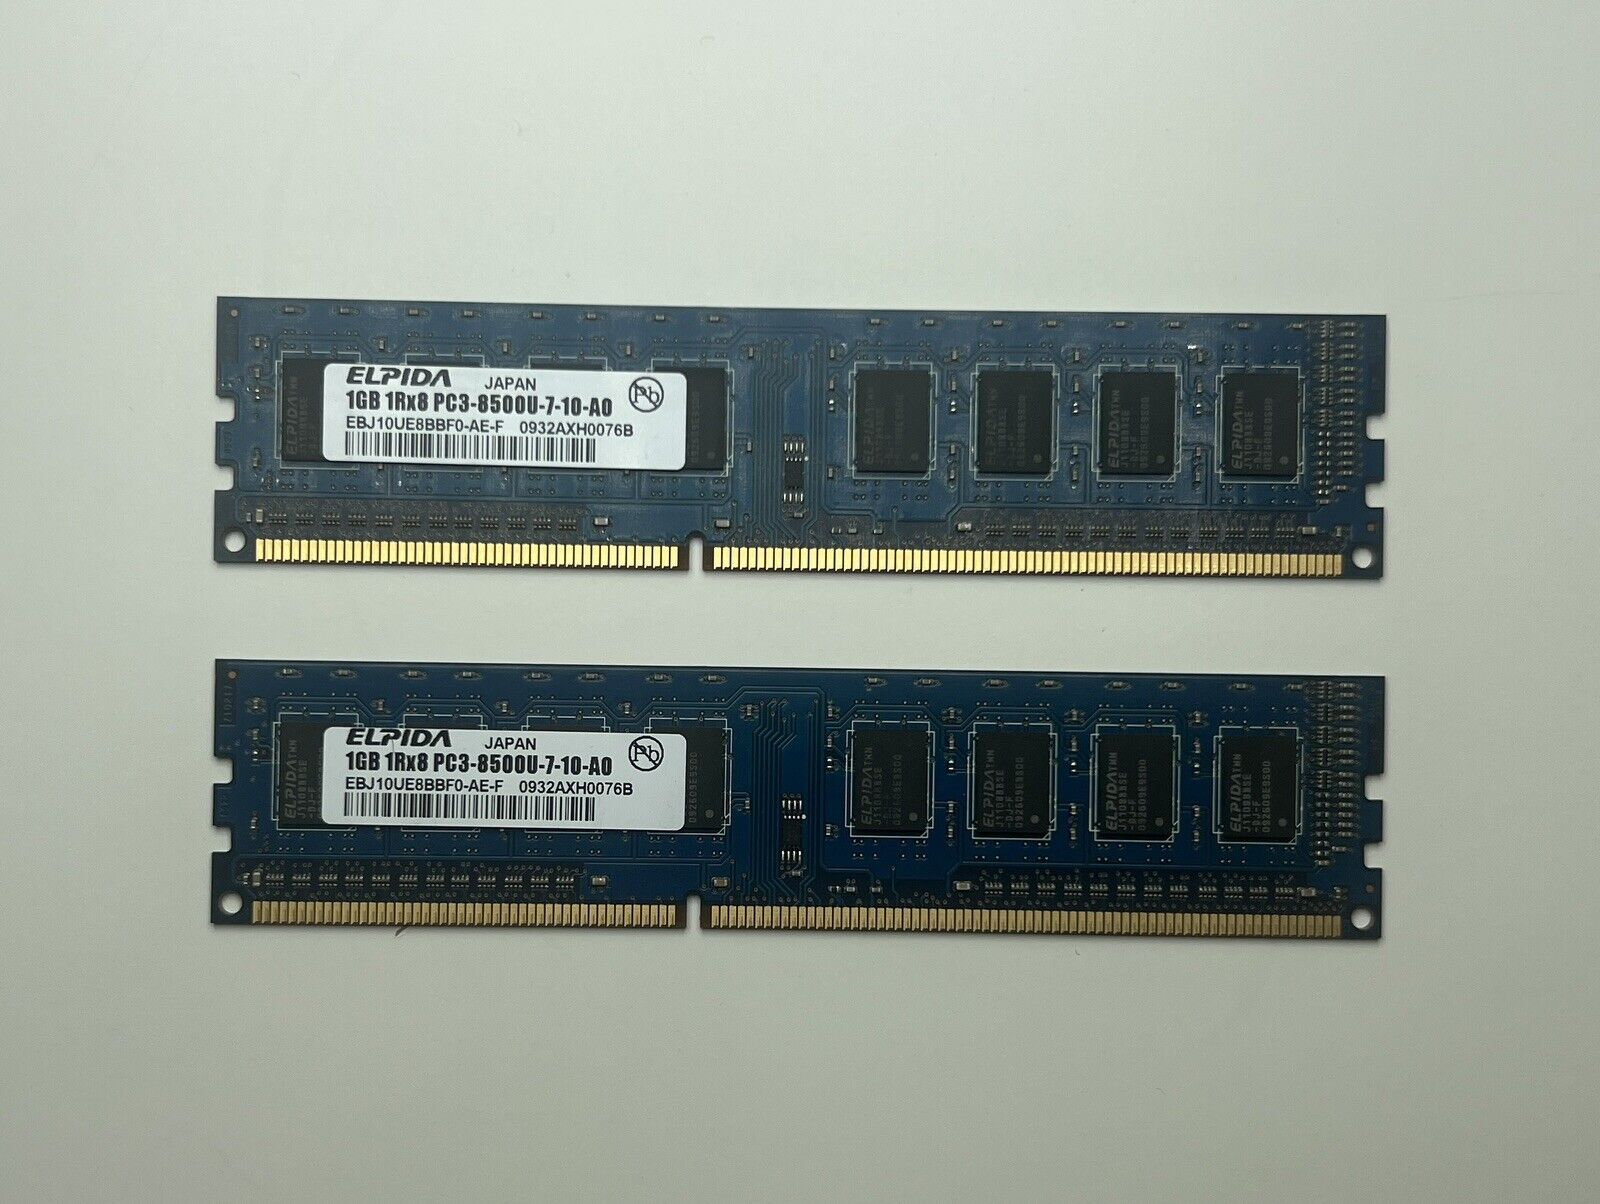 Set of 2 - Elpida EBJ10UE8BBF0-AE-F Blue PC3-8500 (DDR3-1066) 1Rx8 1GB DDR3 RAM